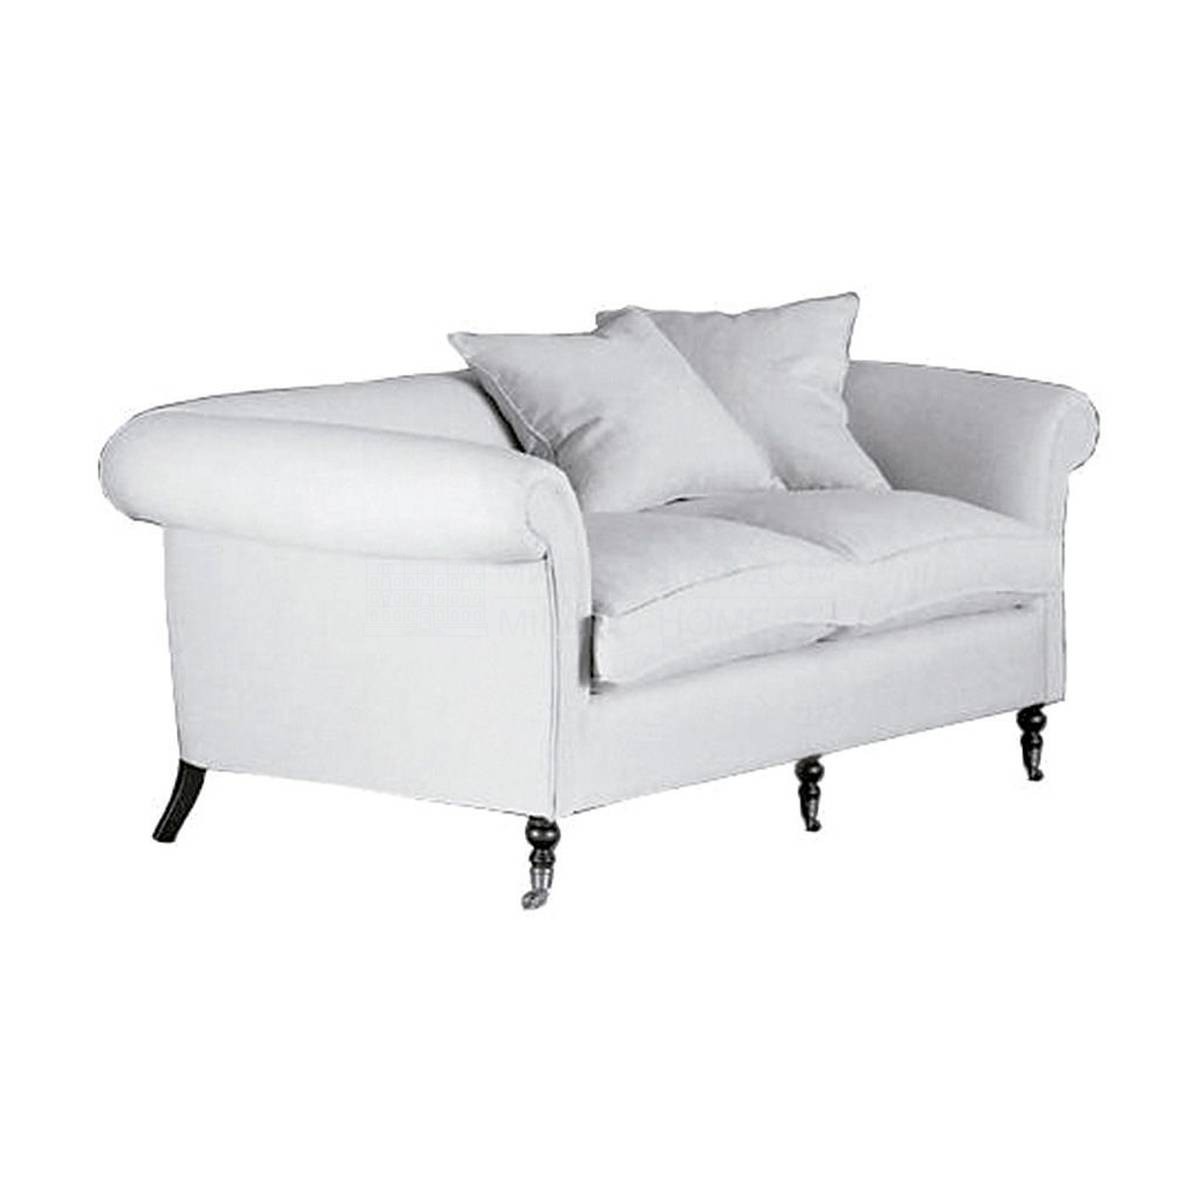 Прямой диван Z-8013 sofa из Испании фабрики GUADARTE